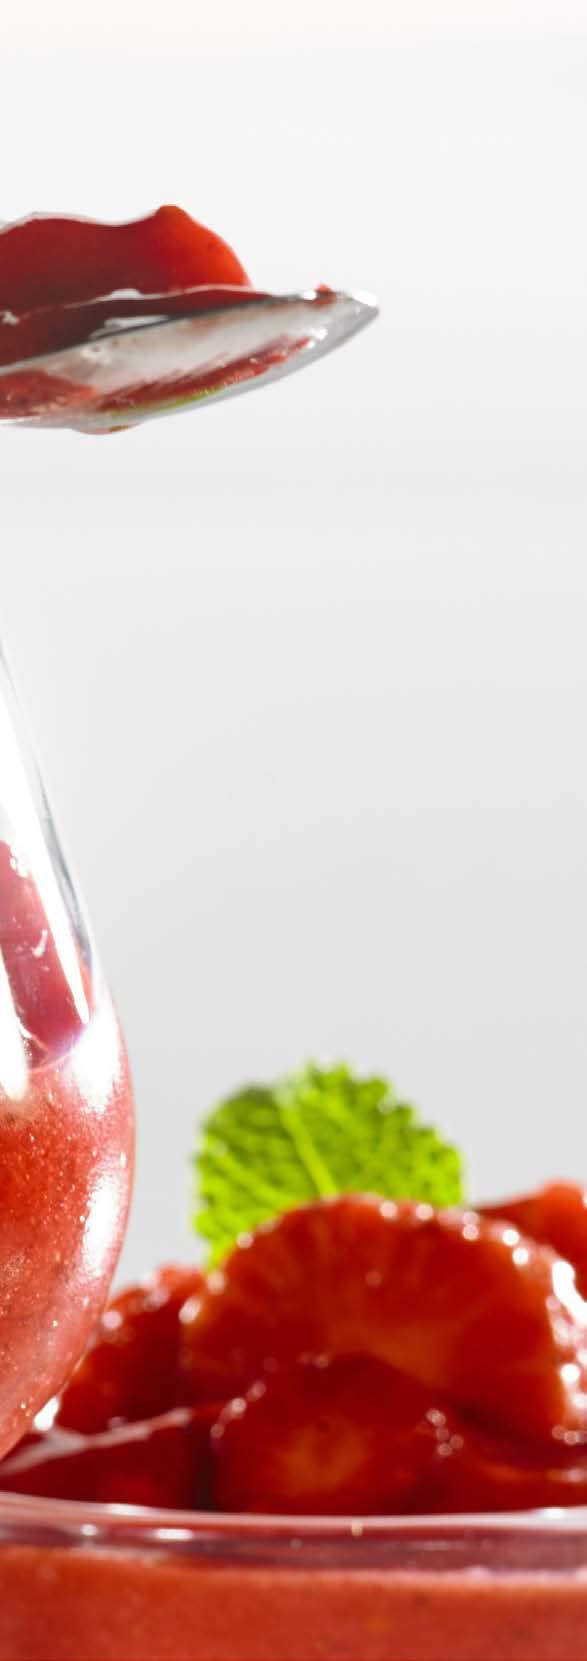 Koktajl grejpfrutowotruskawkowy KOKTAJL OWOCOWY SKŁADNIKI: 2 porcje 1 czerwony grejpfrut 1 szklanka truskawek garść czerwonych porzeczek SPOSÓB WYKONANIA: Z grejpfruta i porzeczek wycisnąć sok.